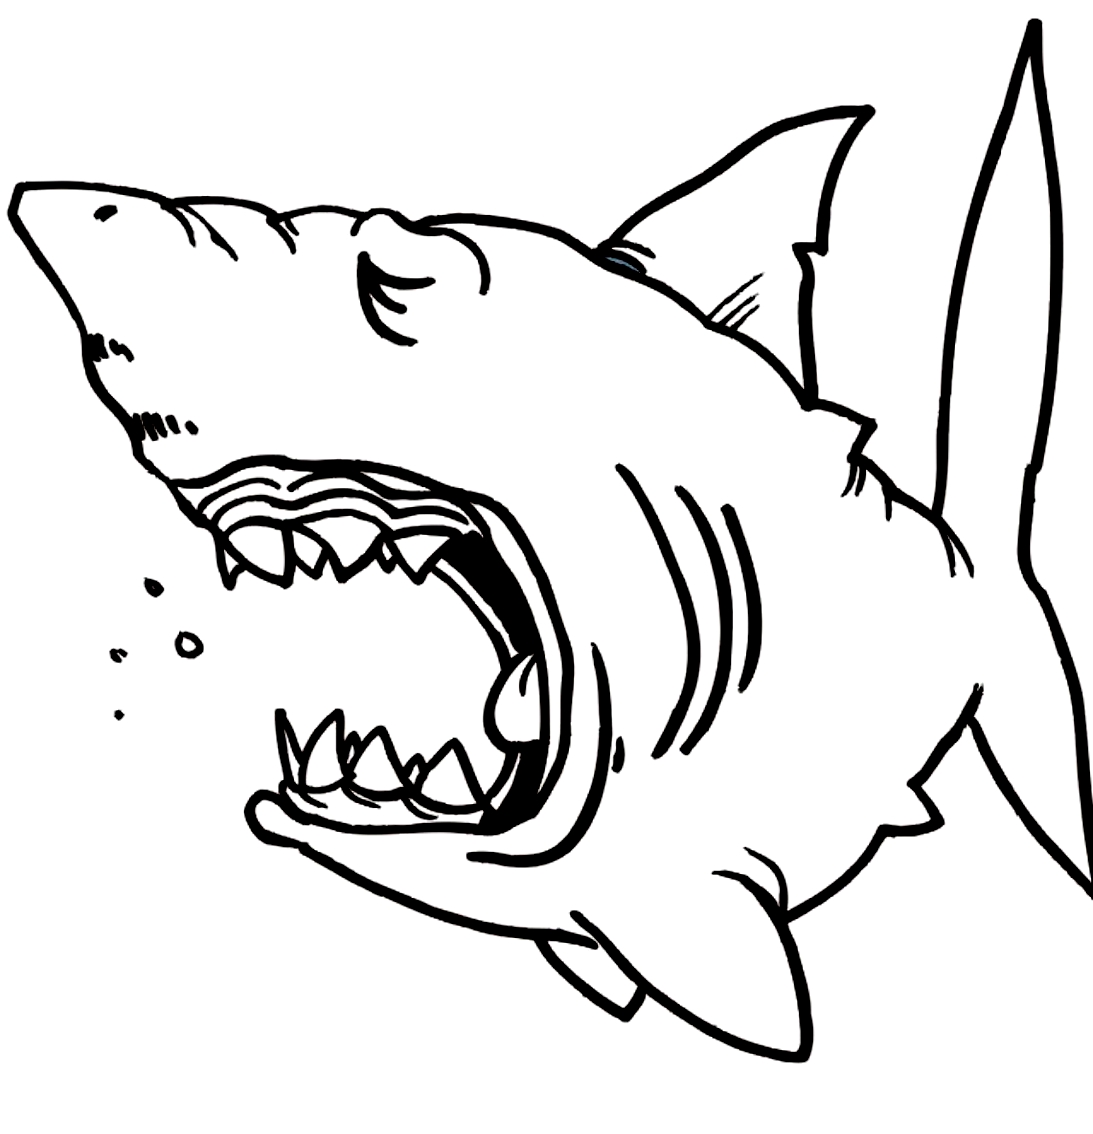 绘制鲨鱼图10以进行打印和着色